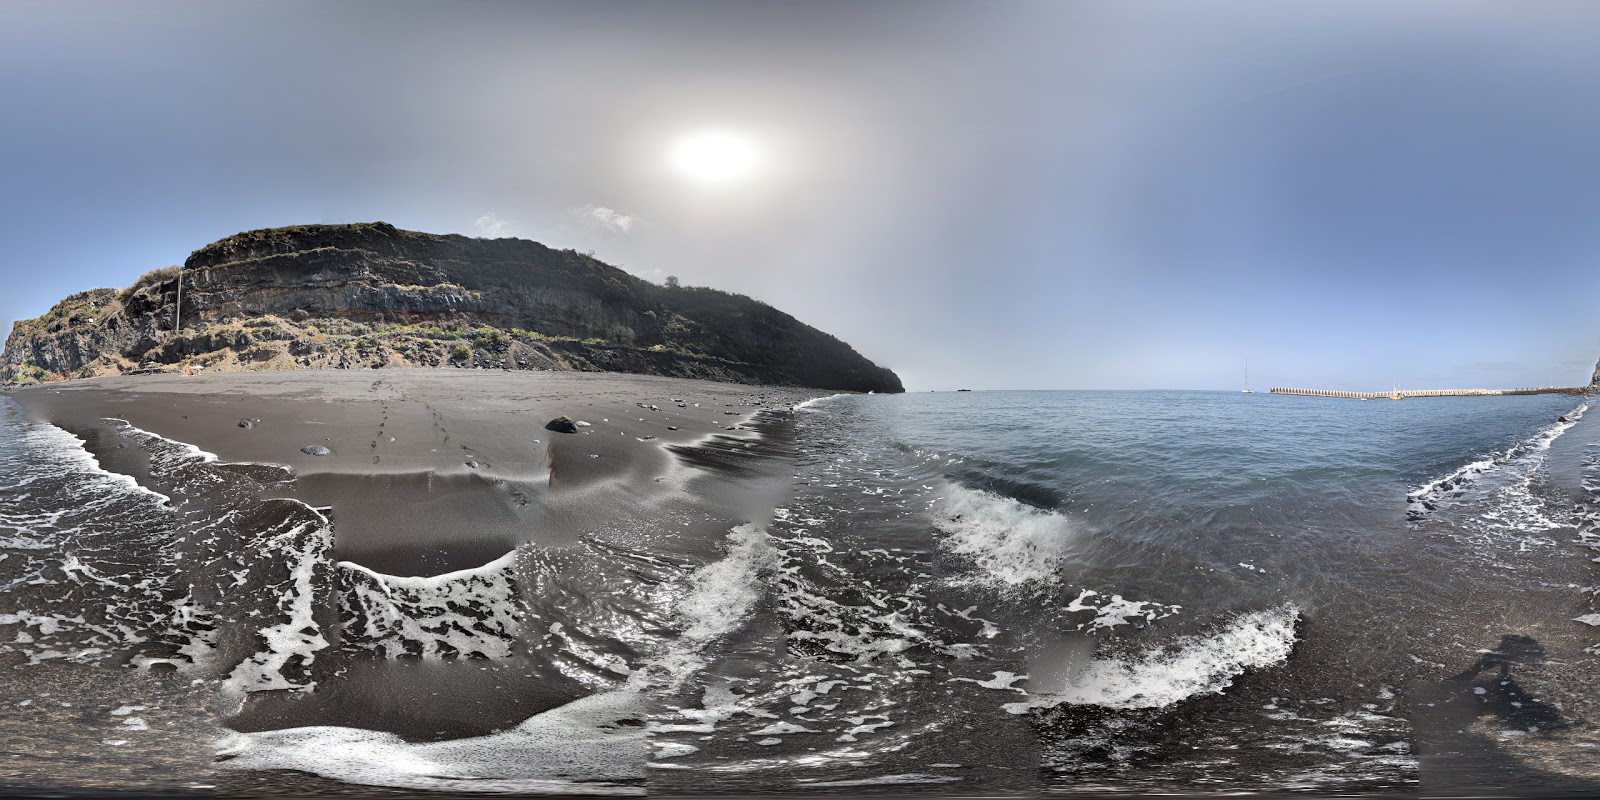 Fotografie cu Tazacorte beach cu o suprafață de nisip negru